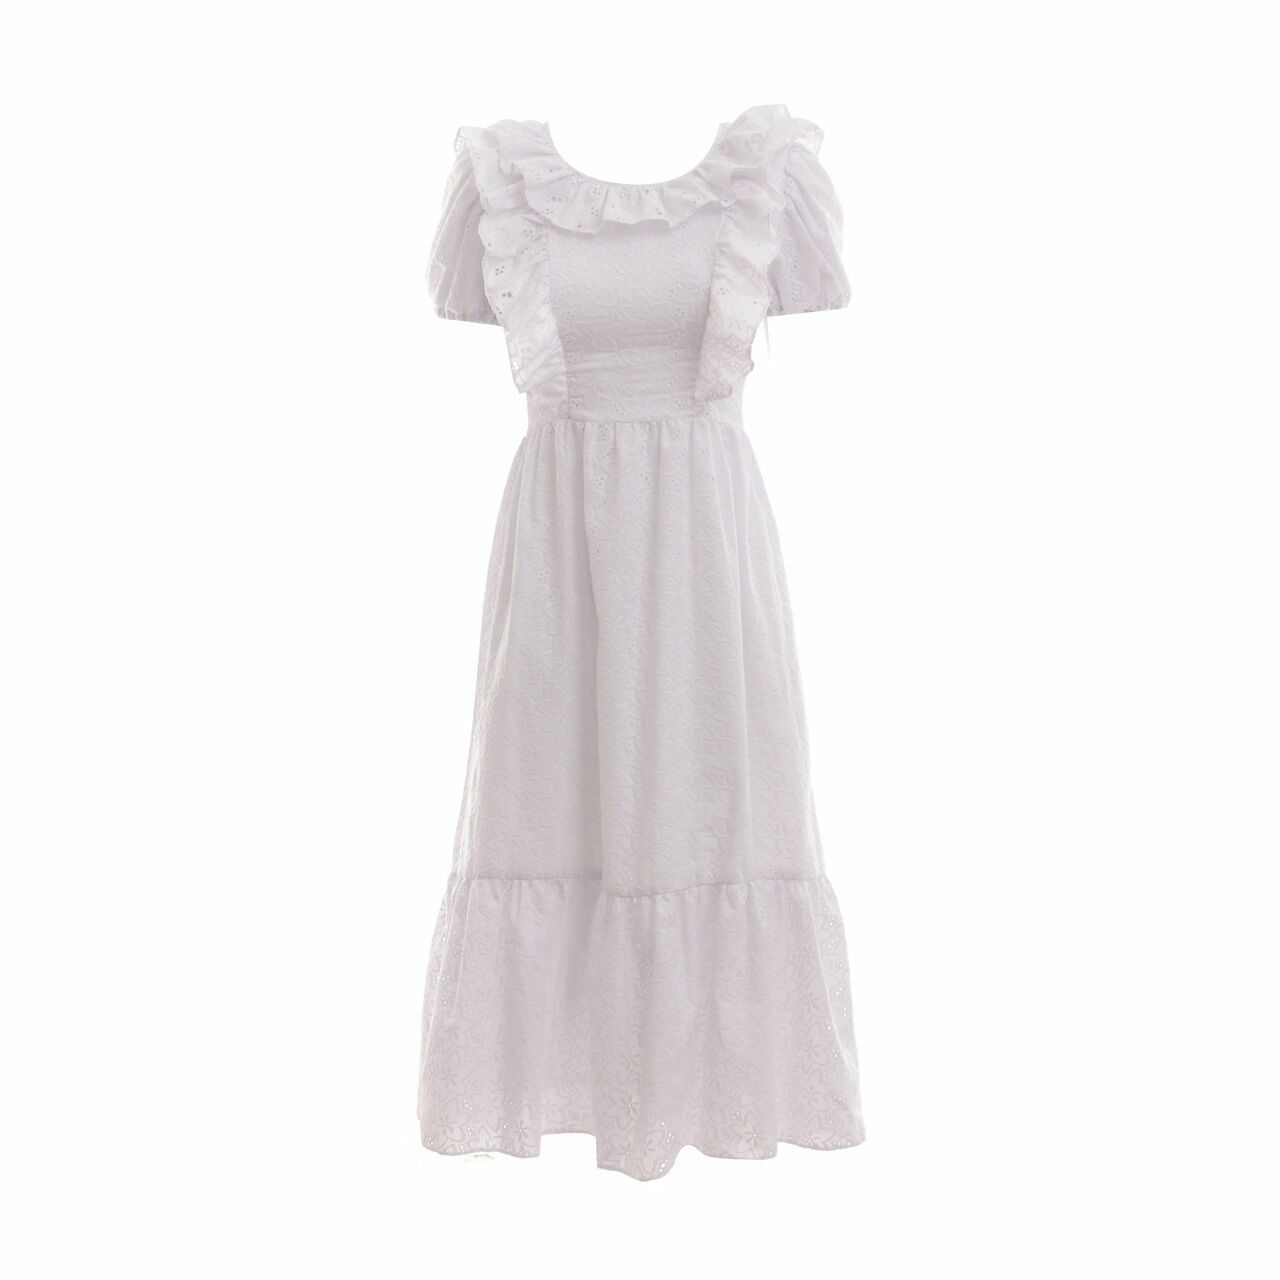 Poise24 White Long Dress